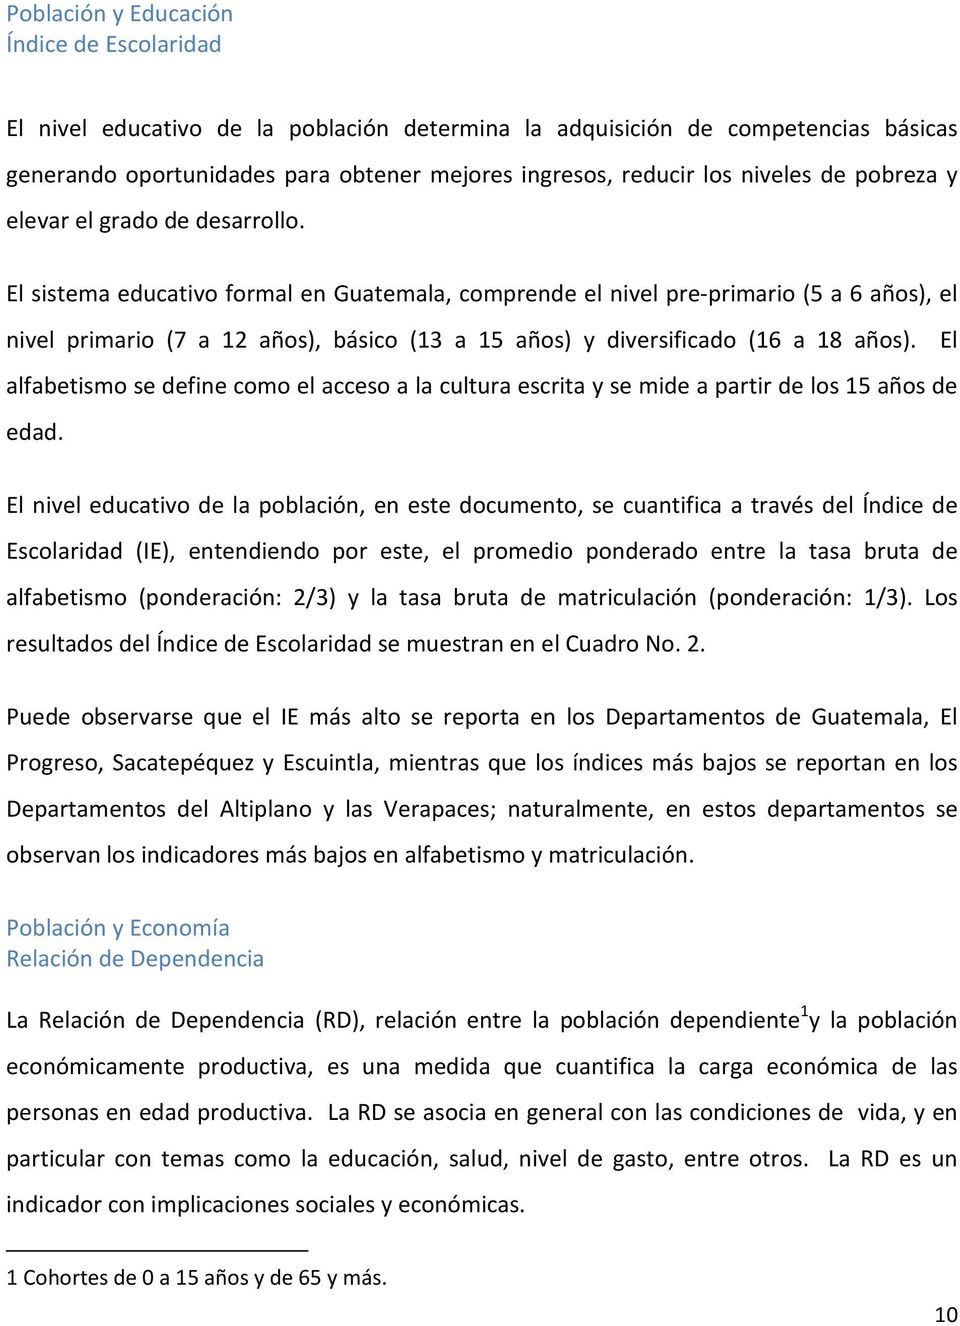 El sistema educativo formal en Guatemala, comprende el nivel pre-primario (5 a 6 años), el nivel primario (7 a 12 años), básico (13 a 15 años) y diversificado (16 a 18 años).